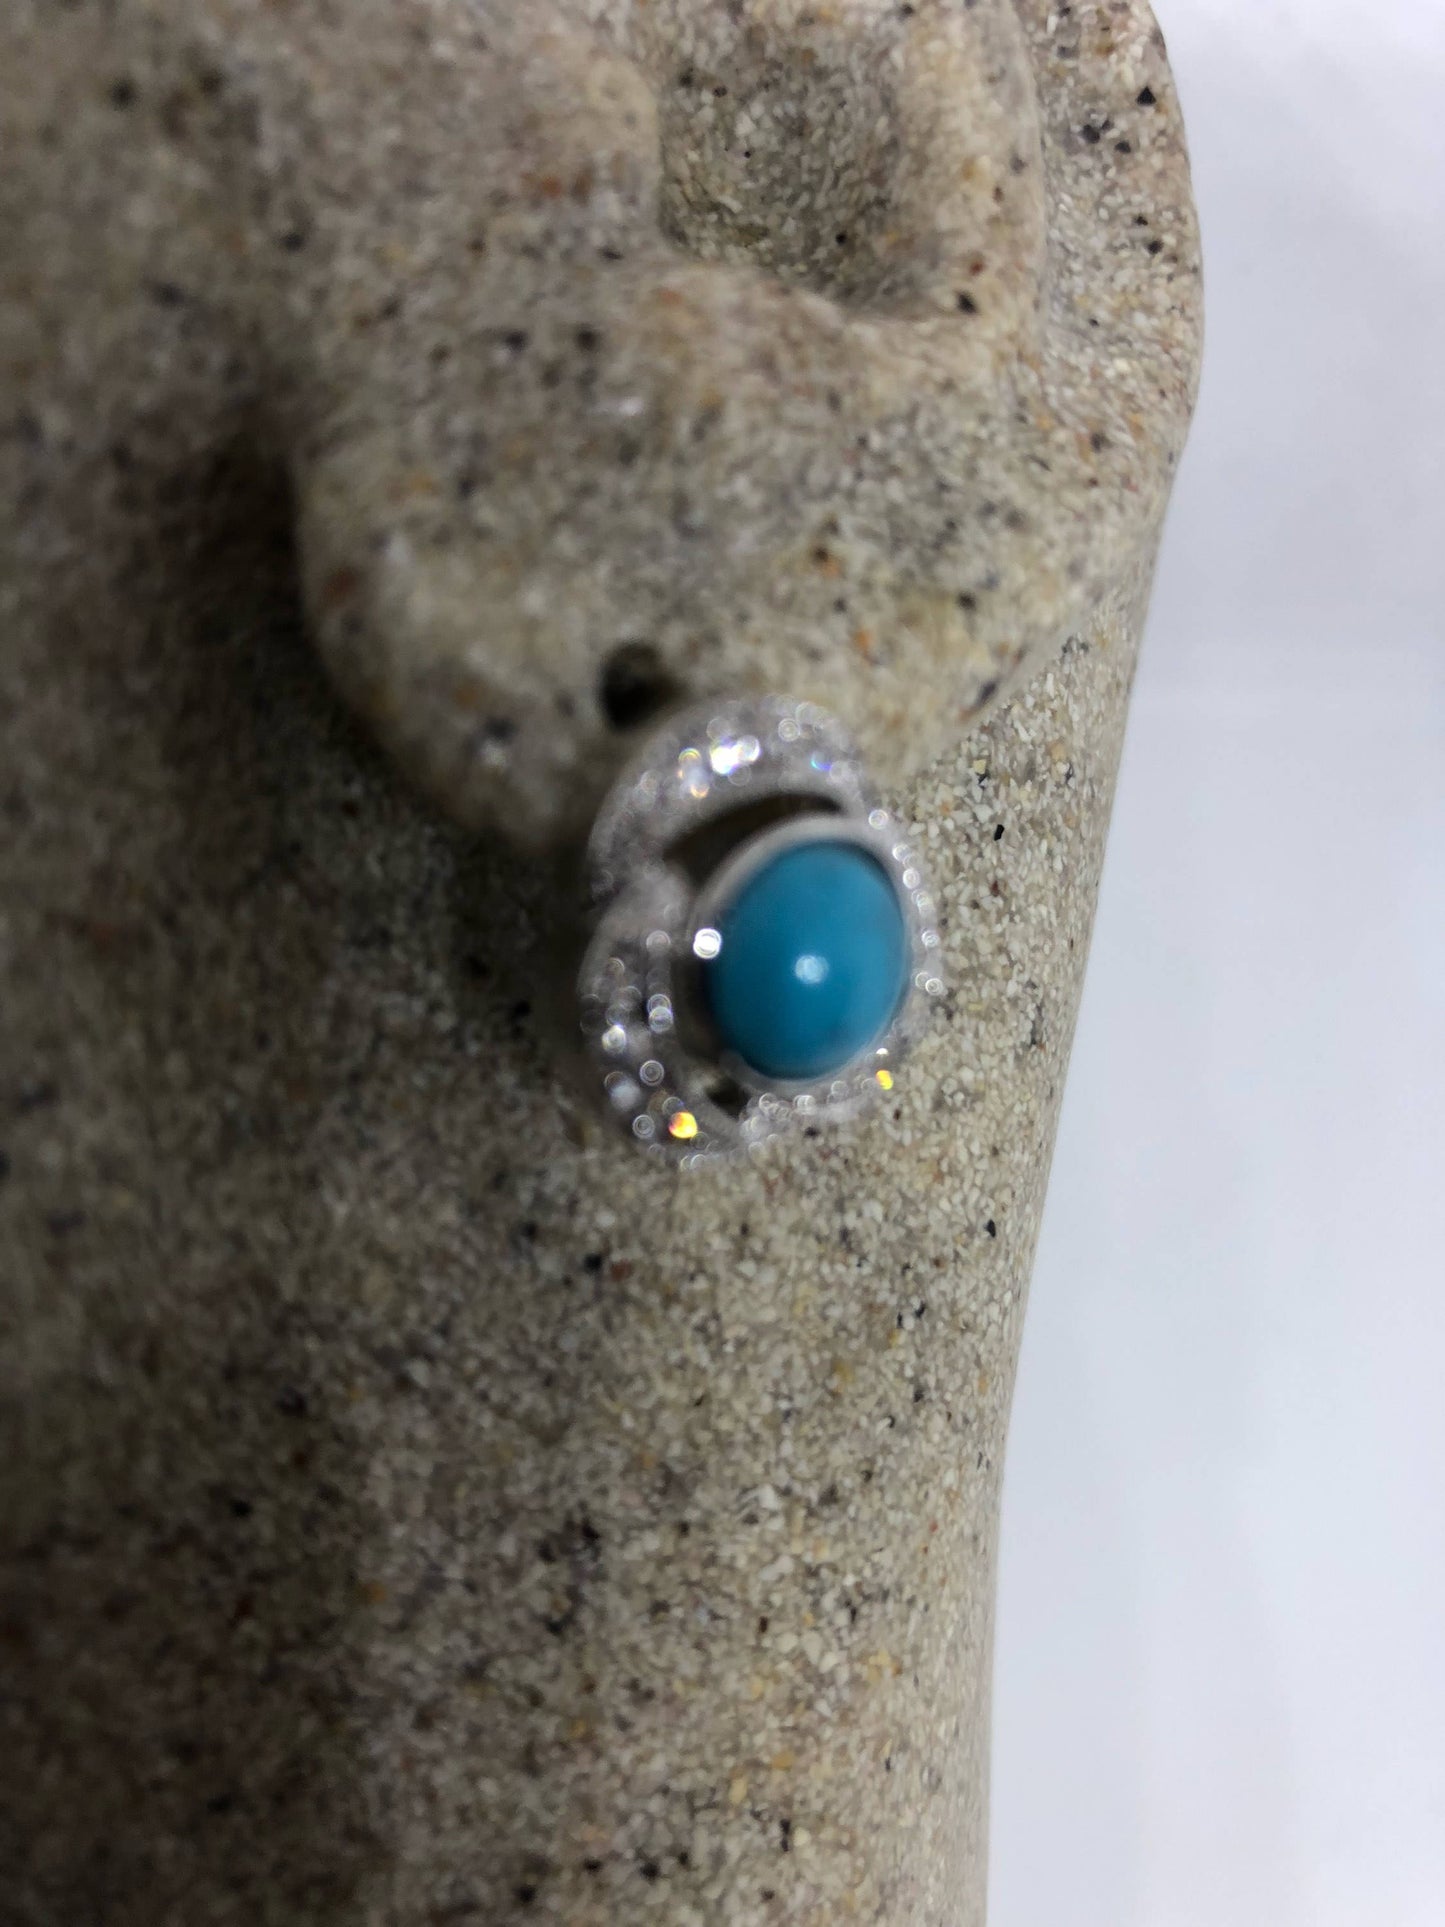 Vintage Handmade Sterling Silver genuine deep blue Persian turquoise earrings